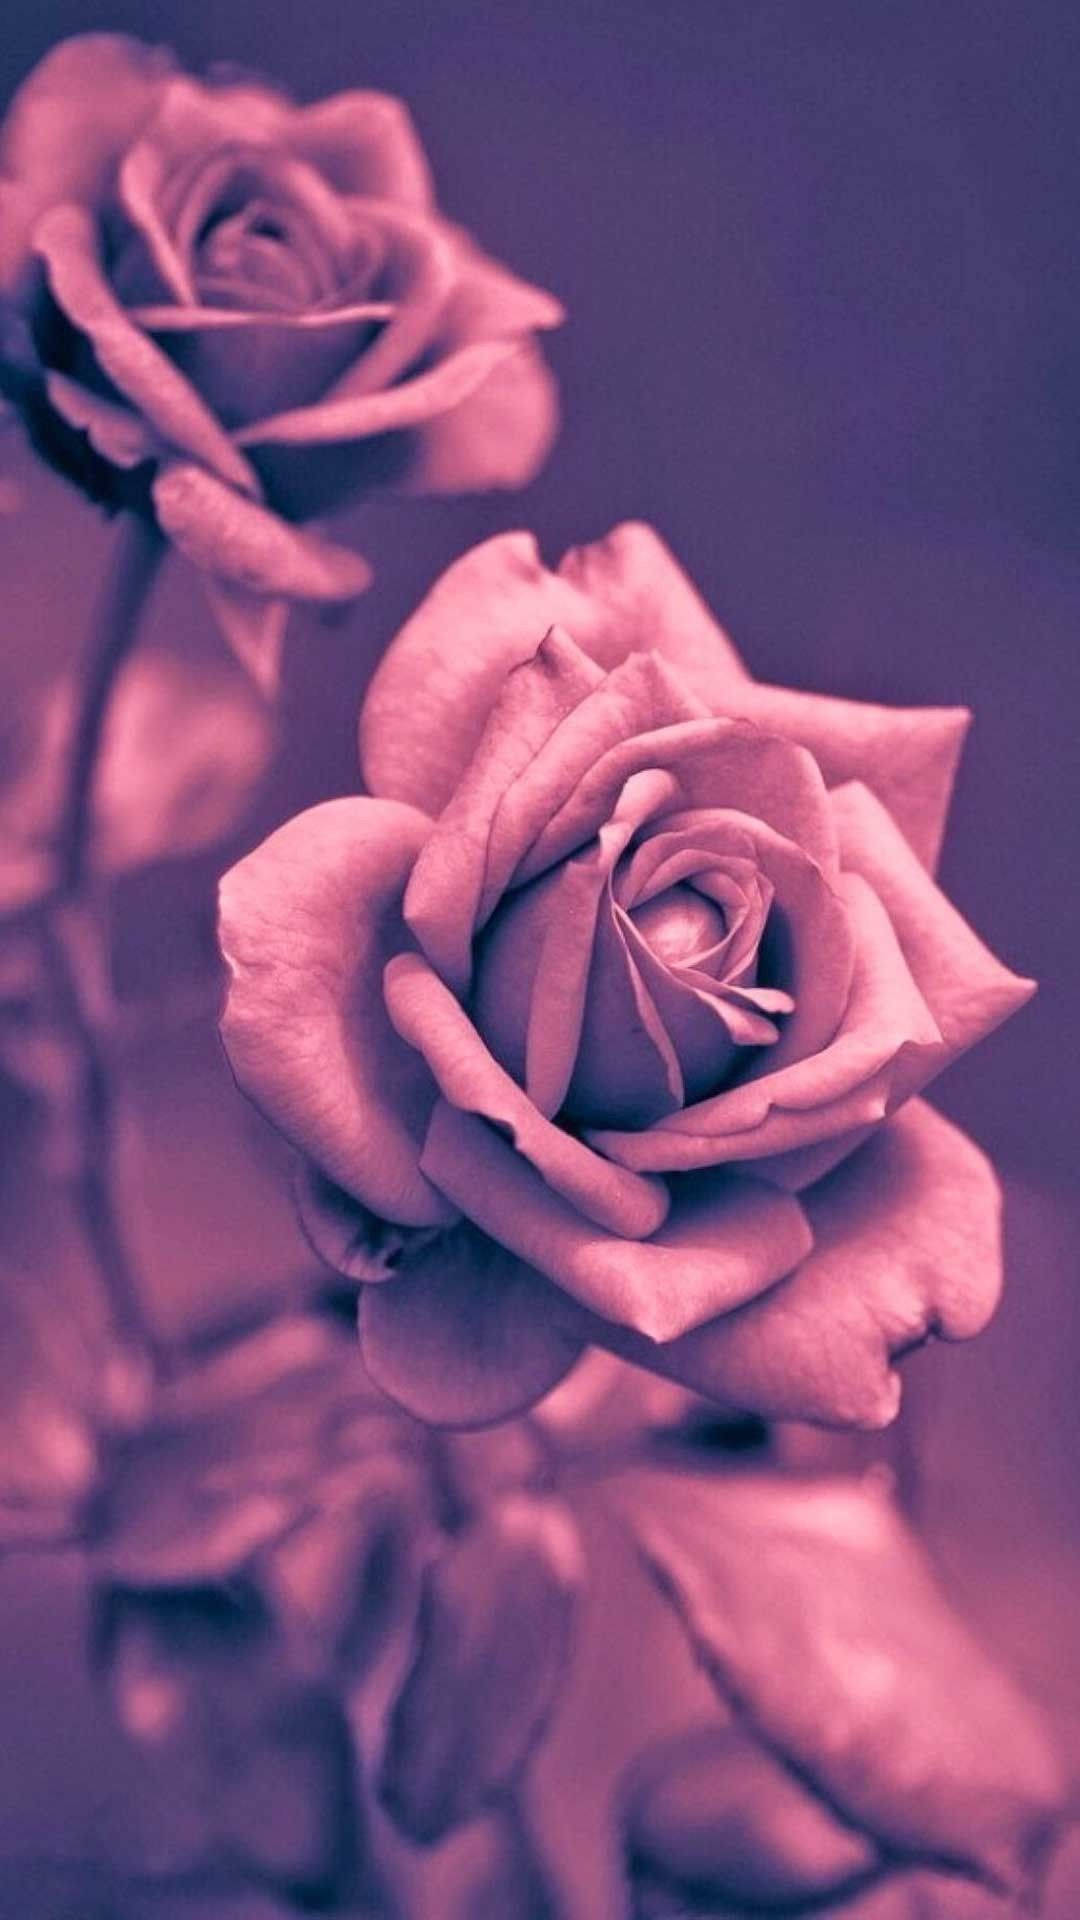 Pretty Monochrome Roses Image